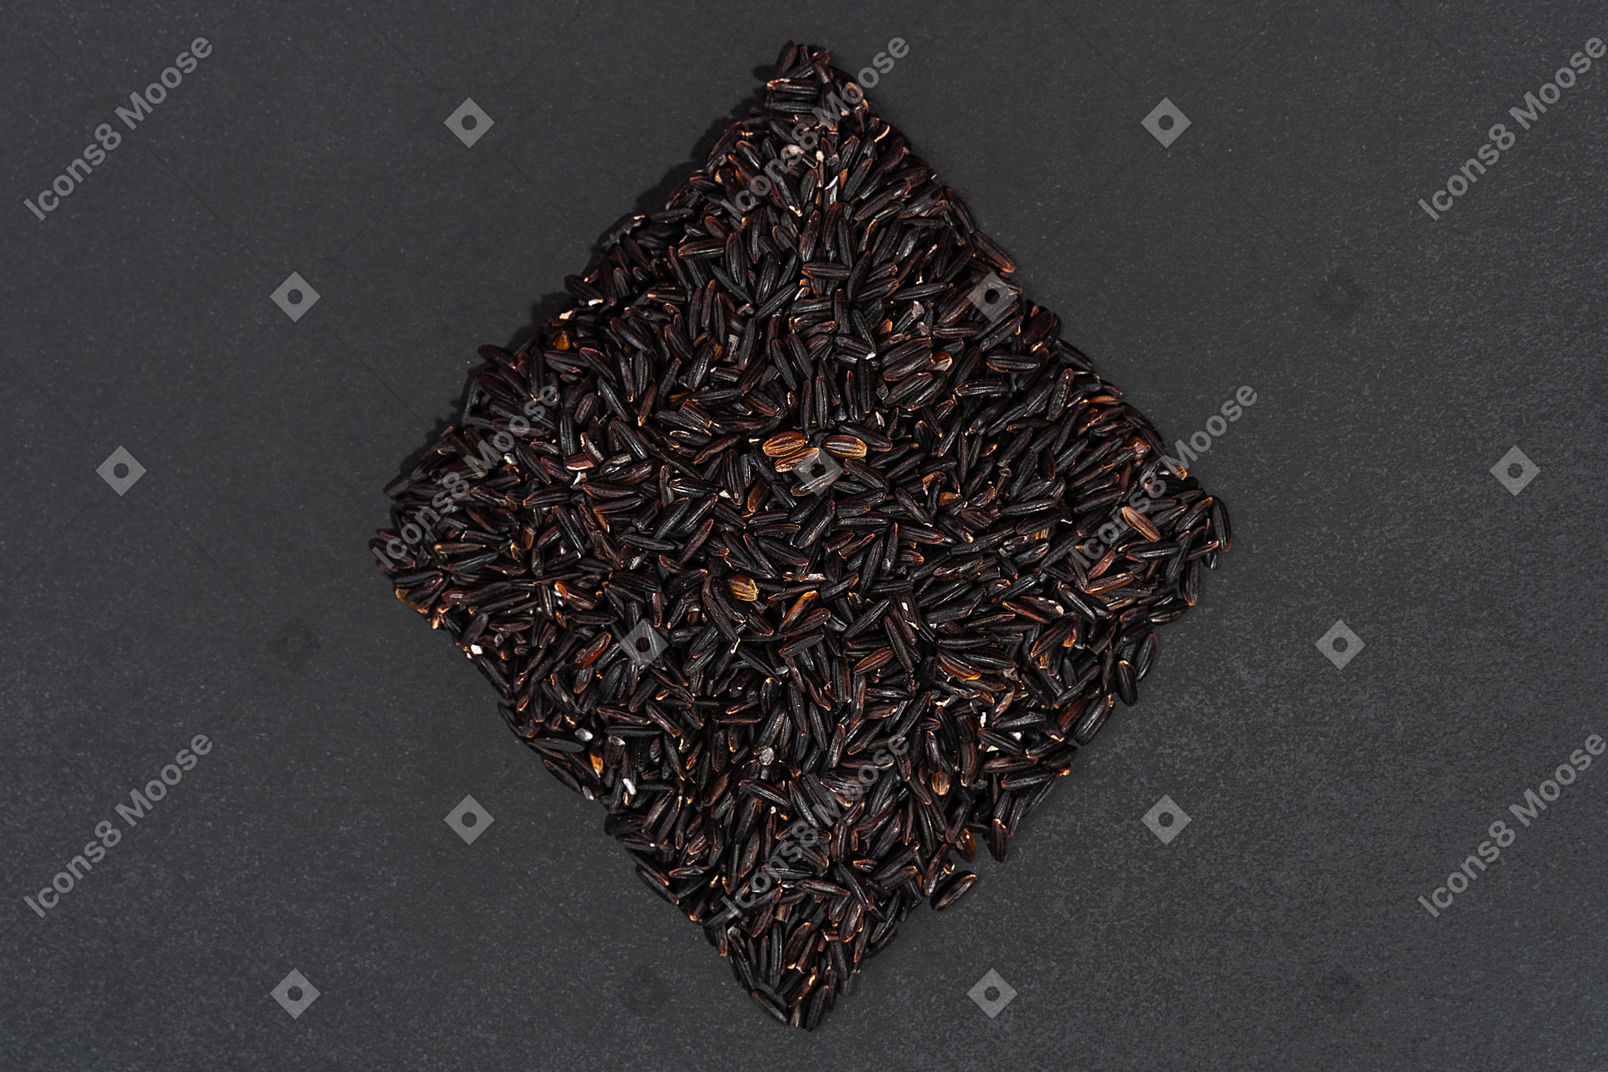 Riz noir en forme de losange